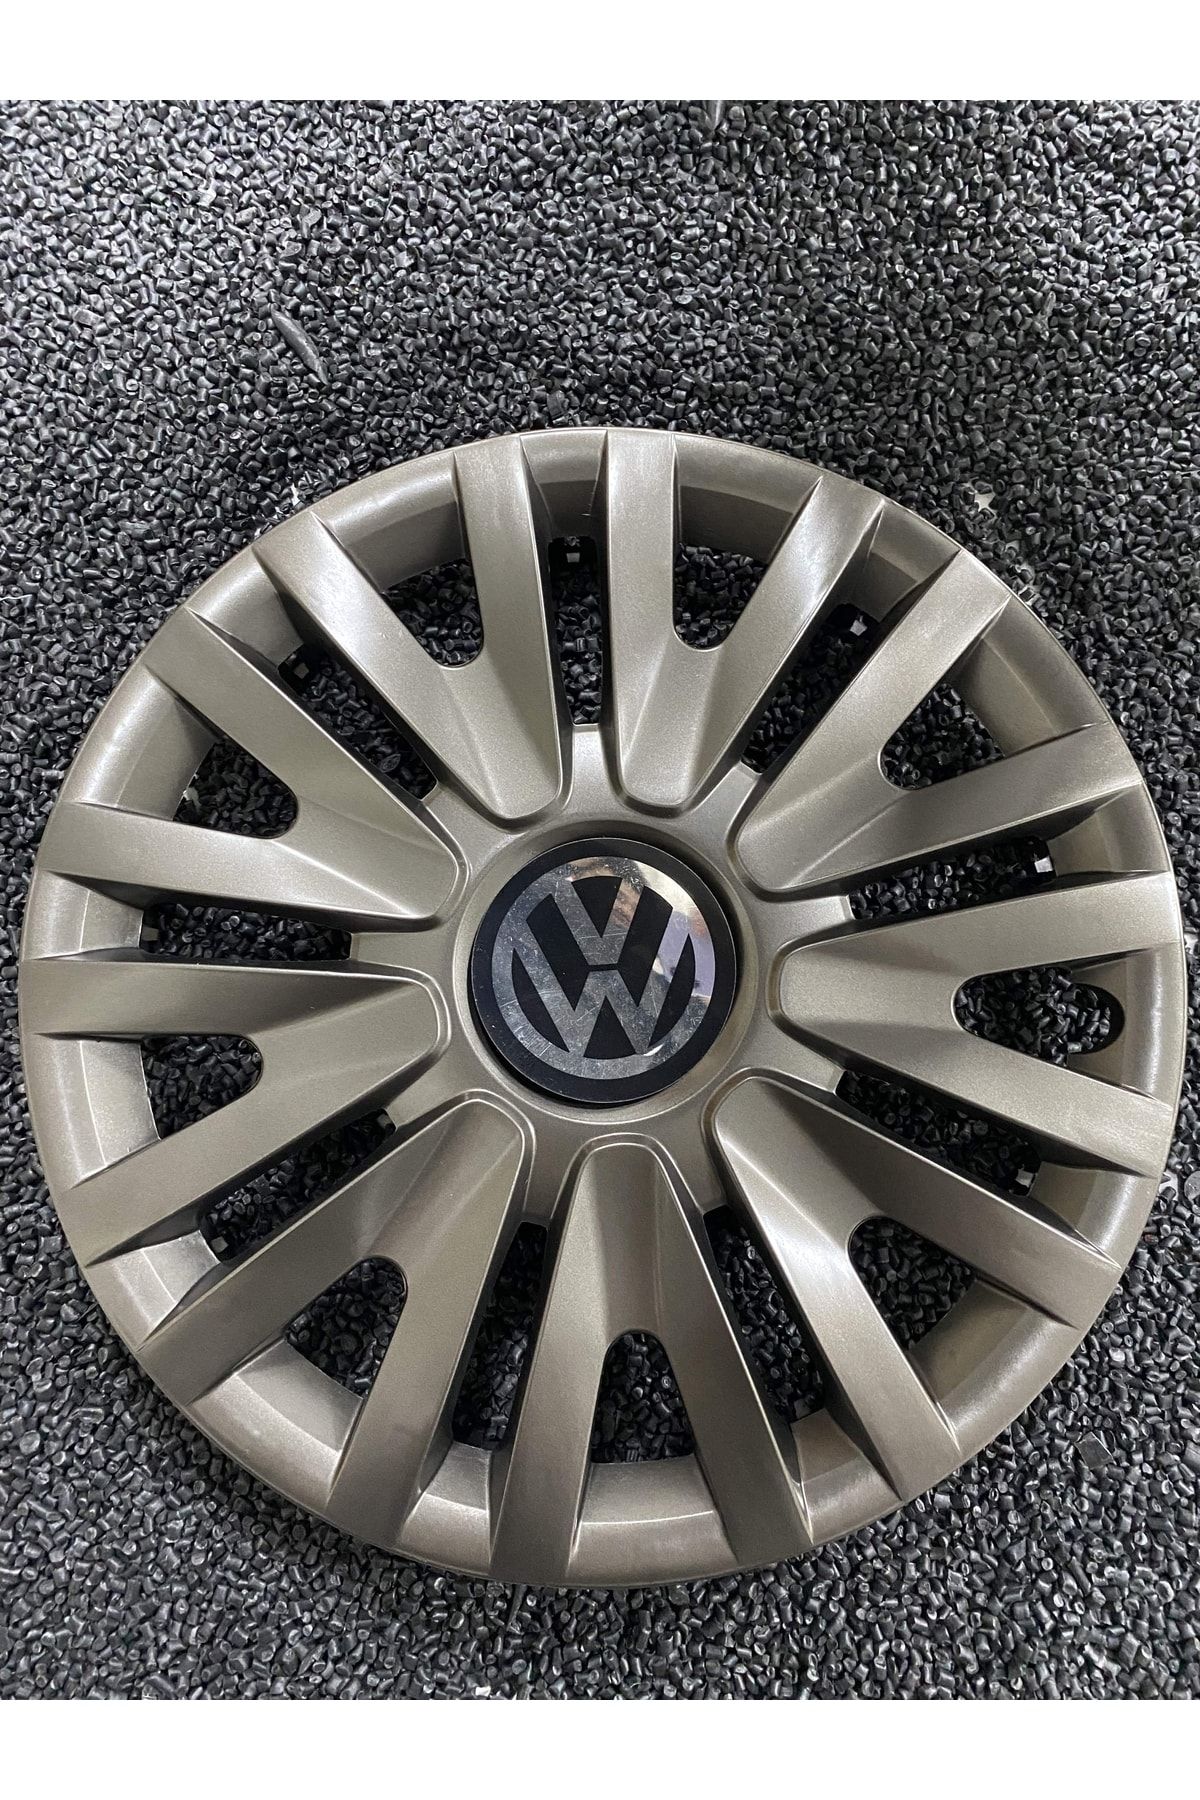 YILAPJANT Volkswagen Beetle 13" Jant Kapağı Kırılmaz Füme